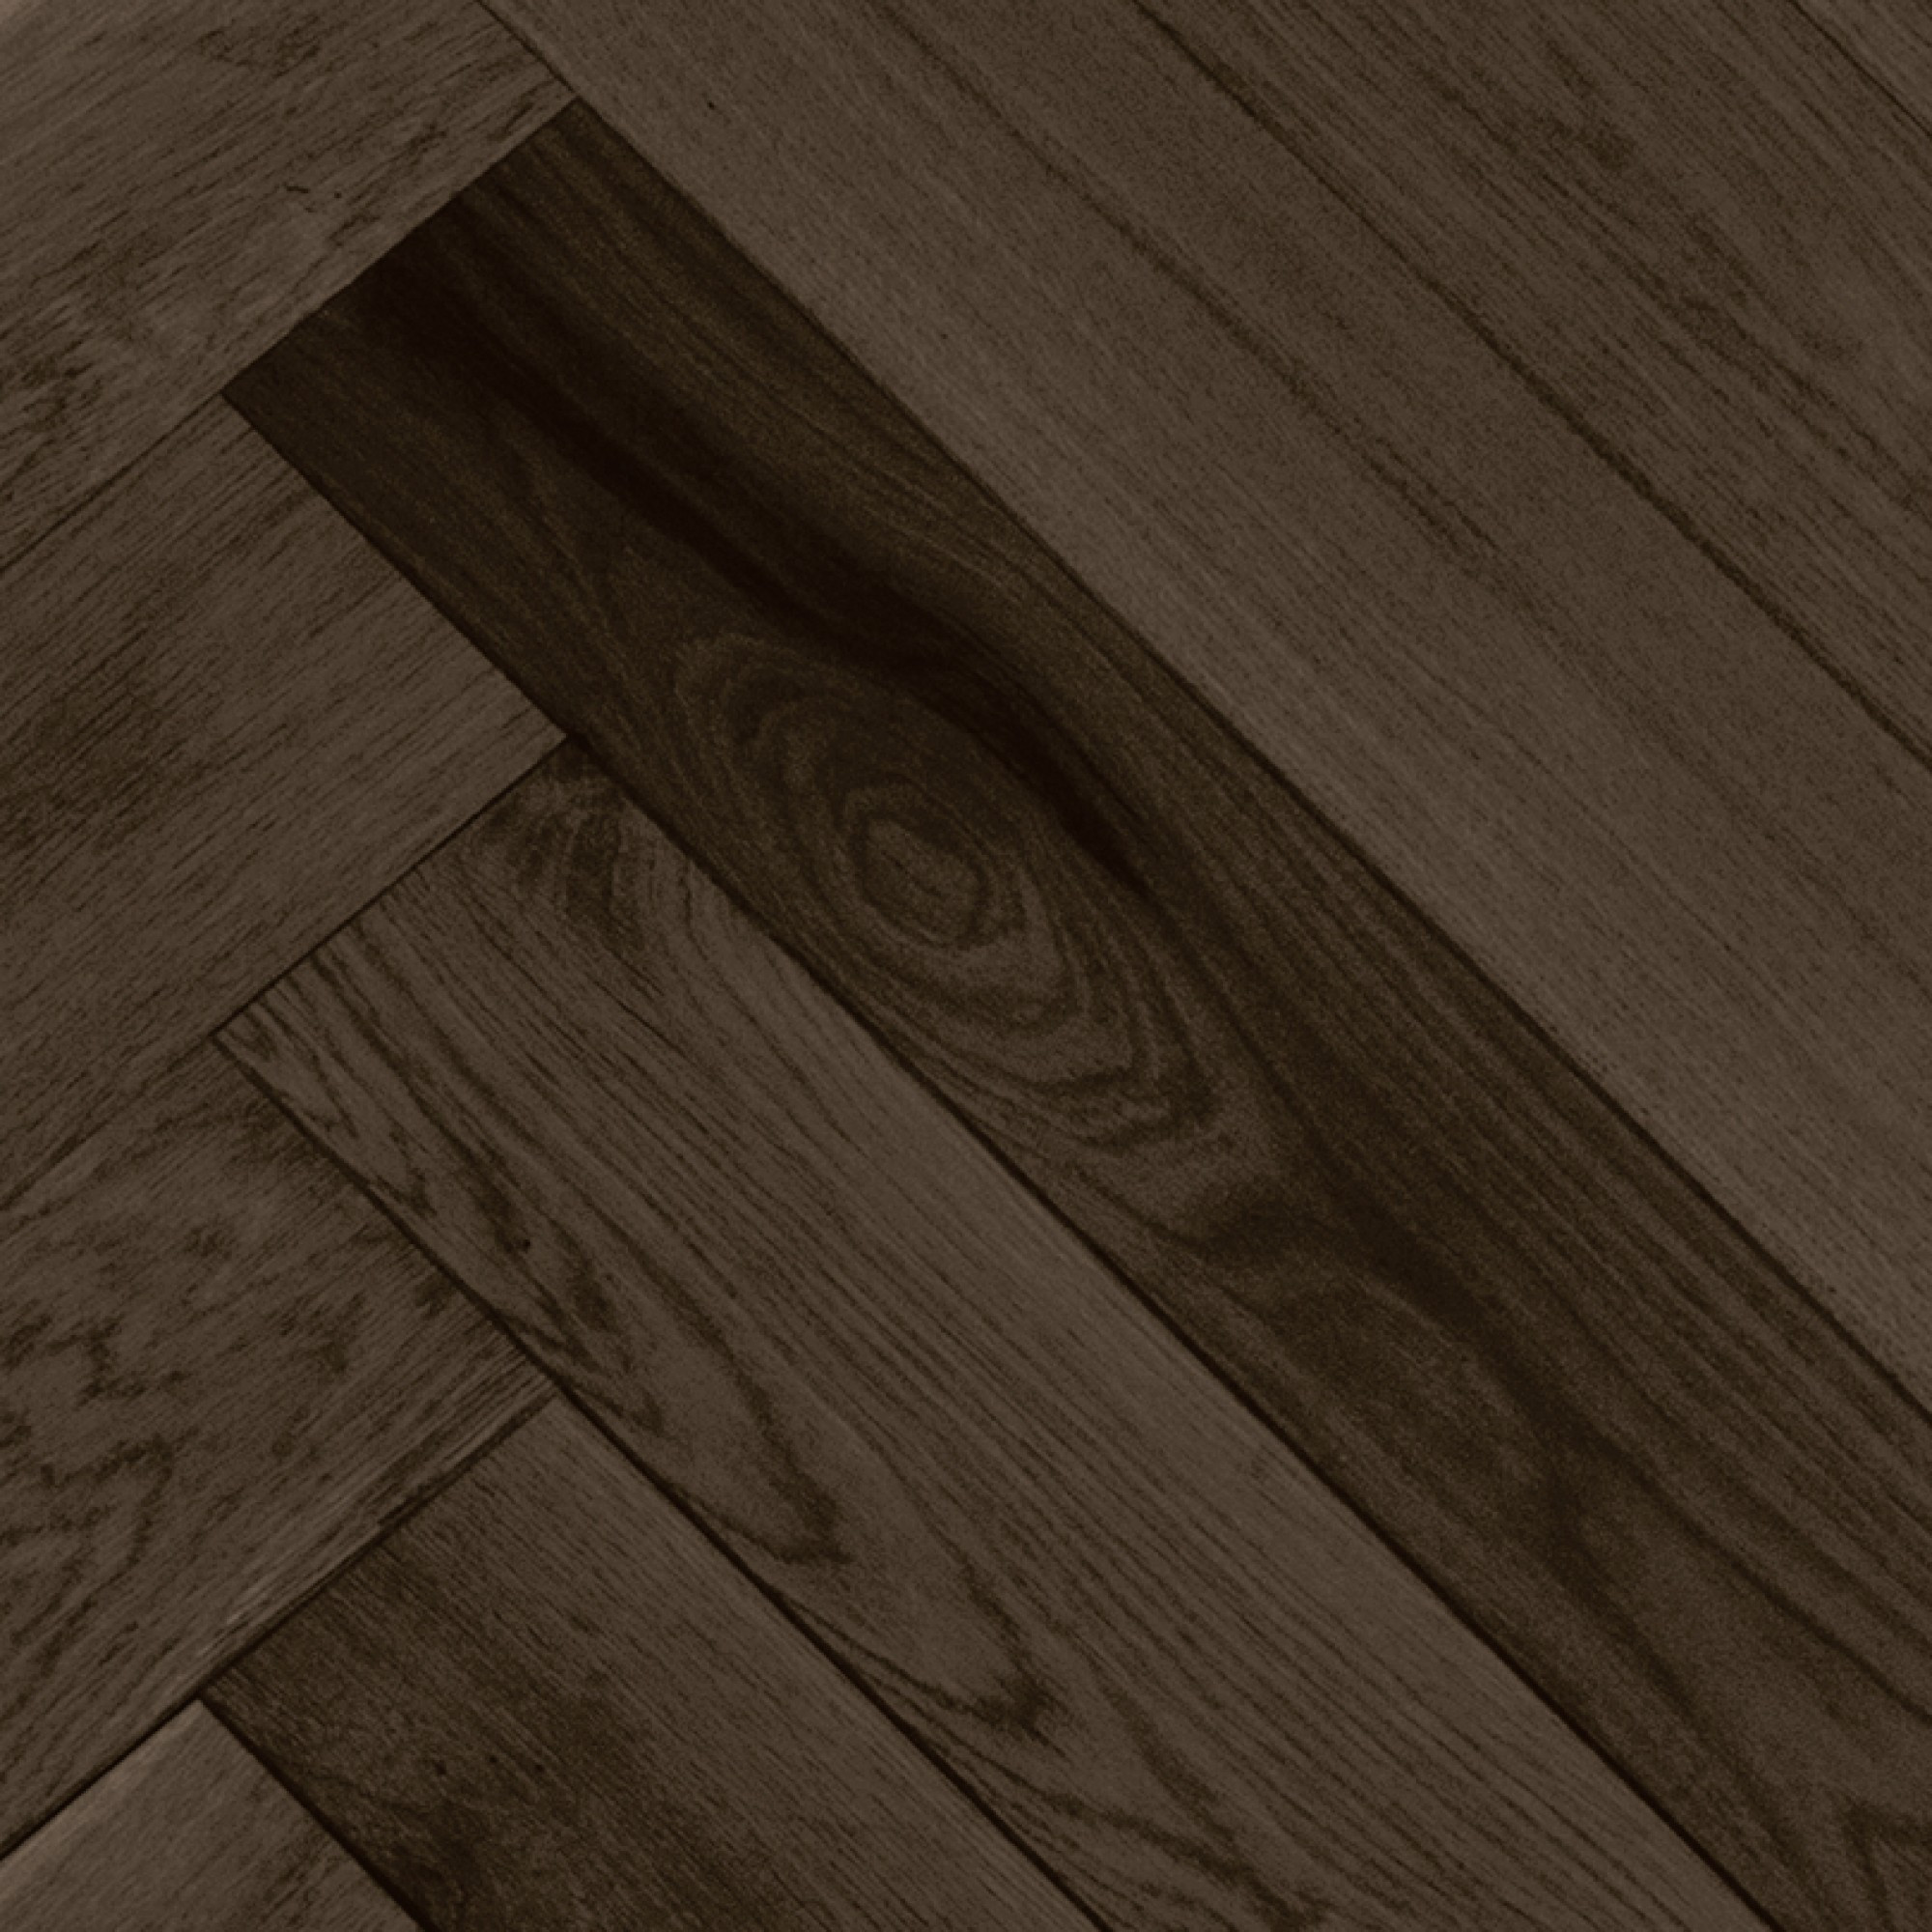 22 Stylish Hardwood Floor Repair Kit 2024 free download hardwood floor repair kit of smooth white oak baroque vintage hardwood flooring and for floor ambiance